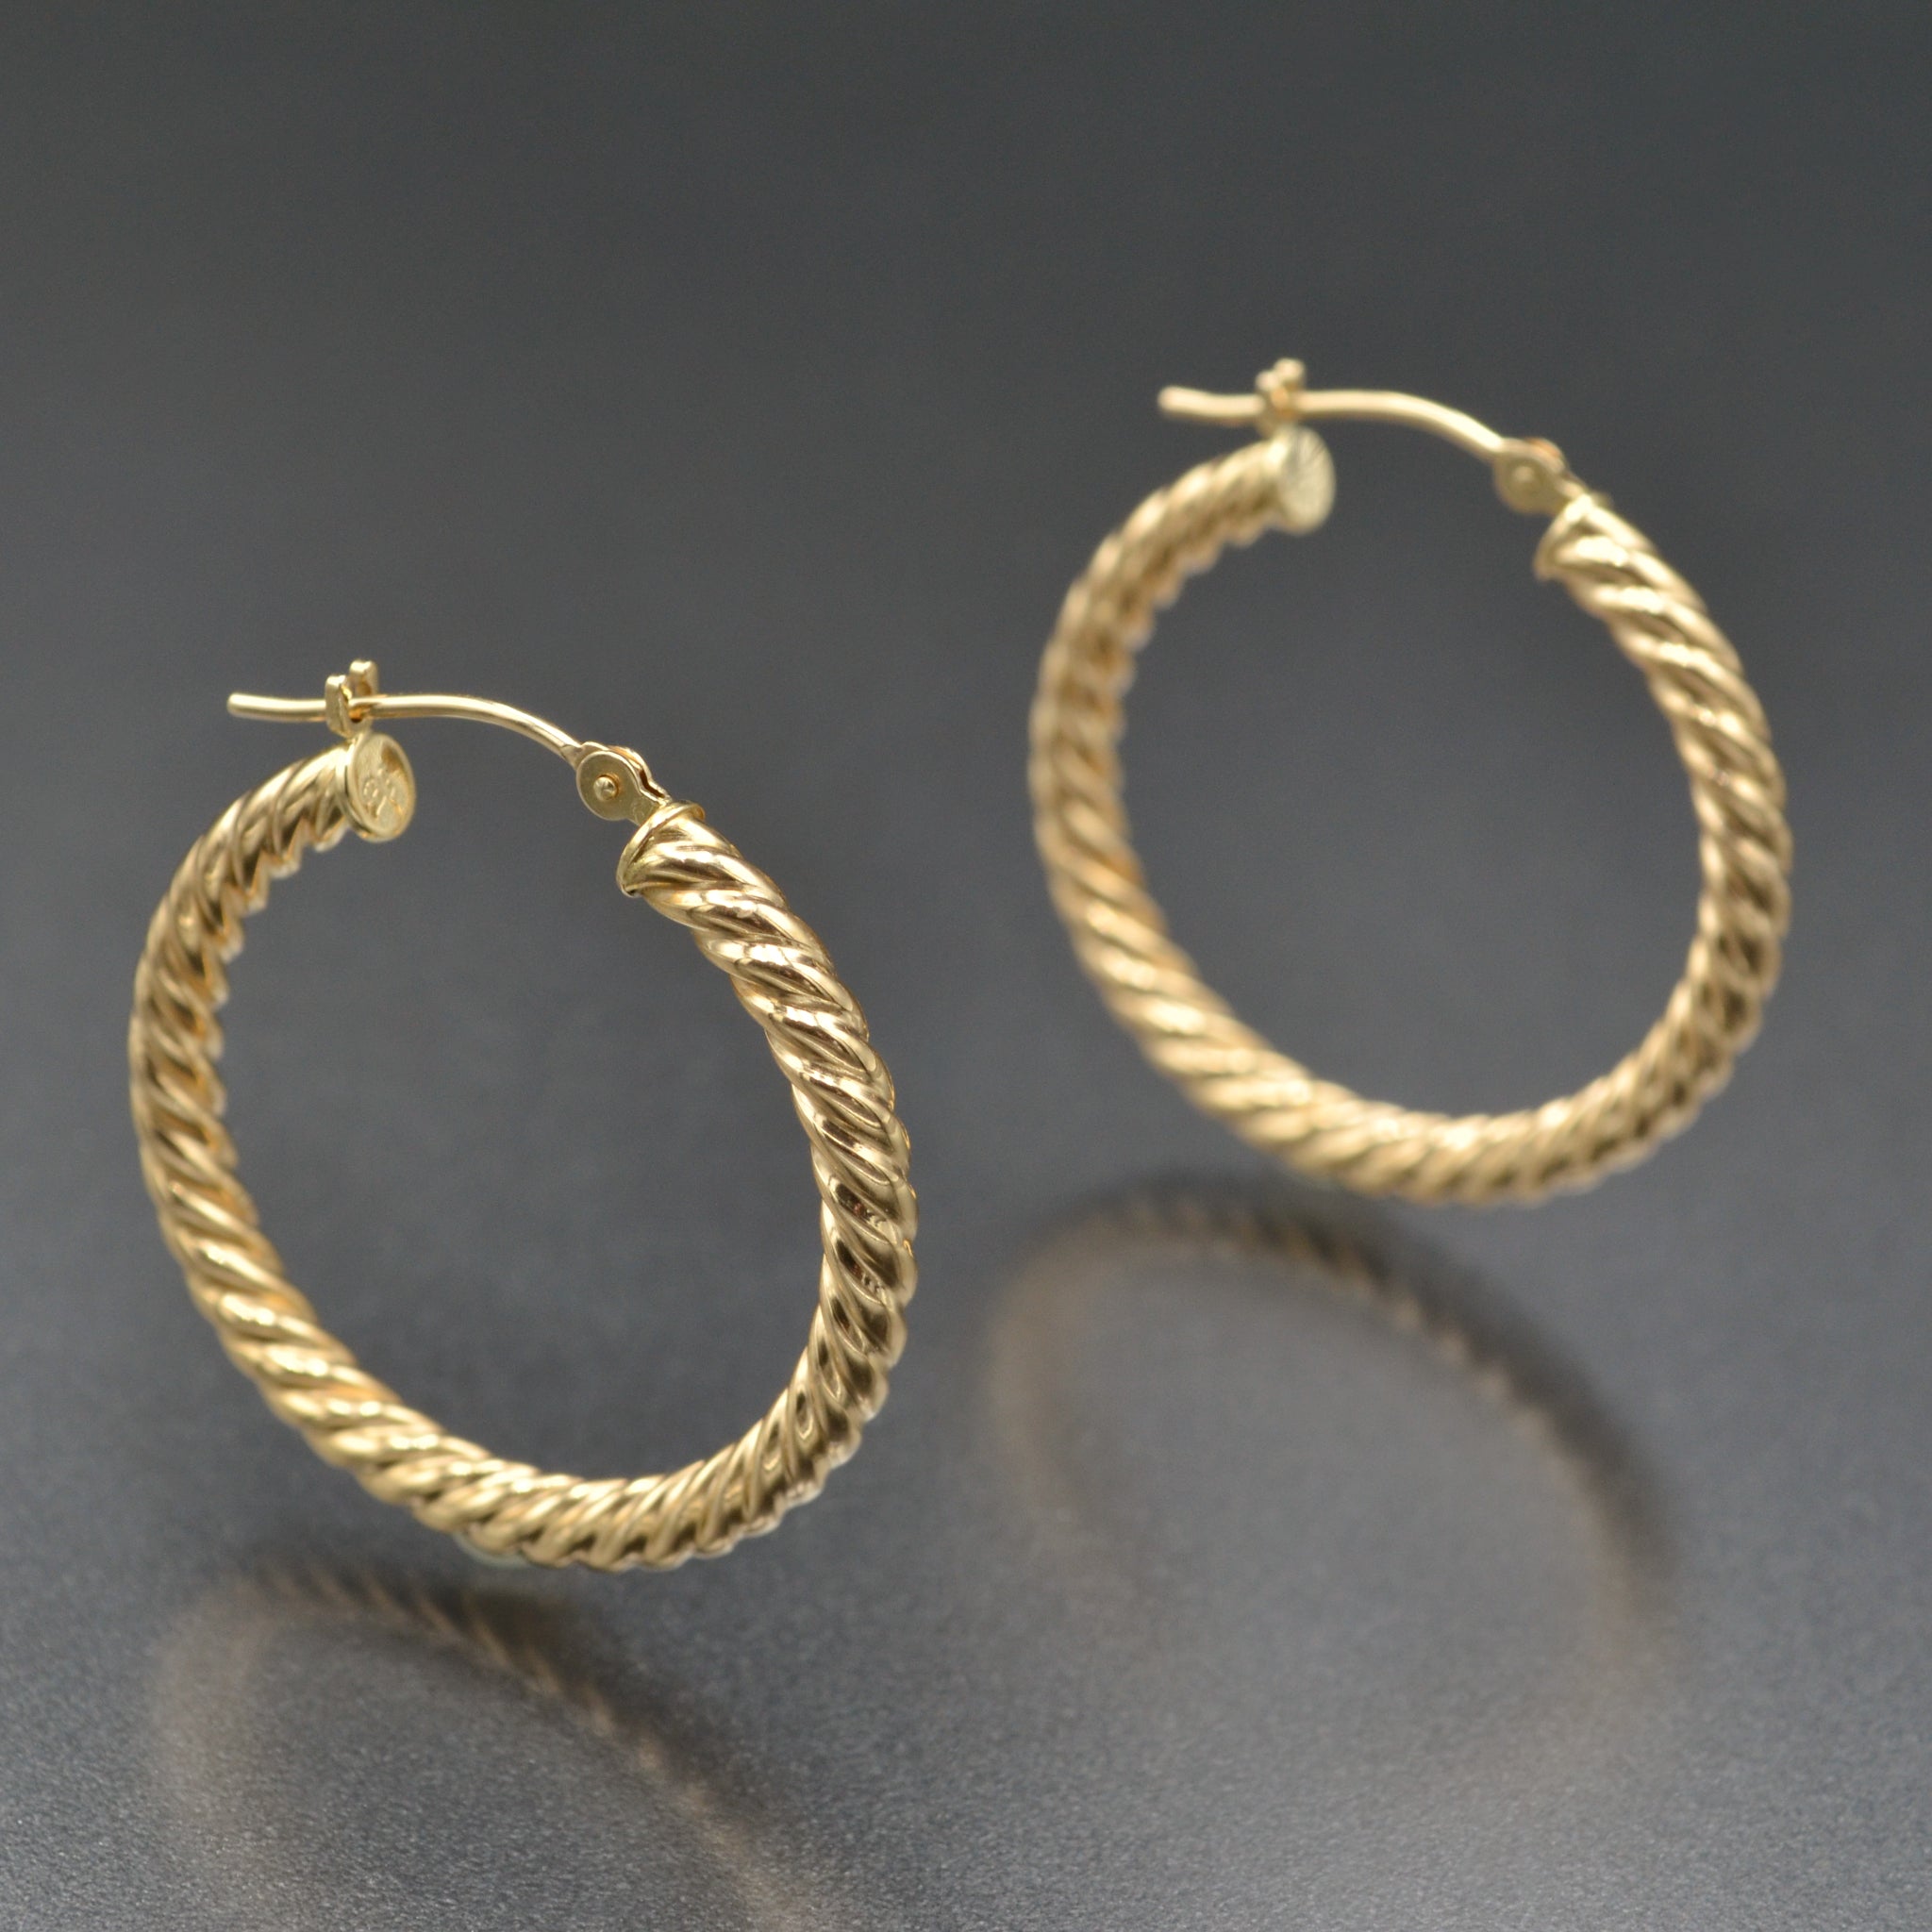 Vintage 14kt Yellow Gold Hoop Earrings - 1.6 Grams | eBay